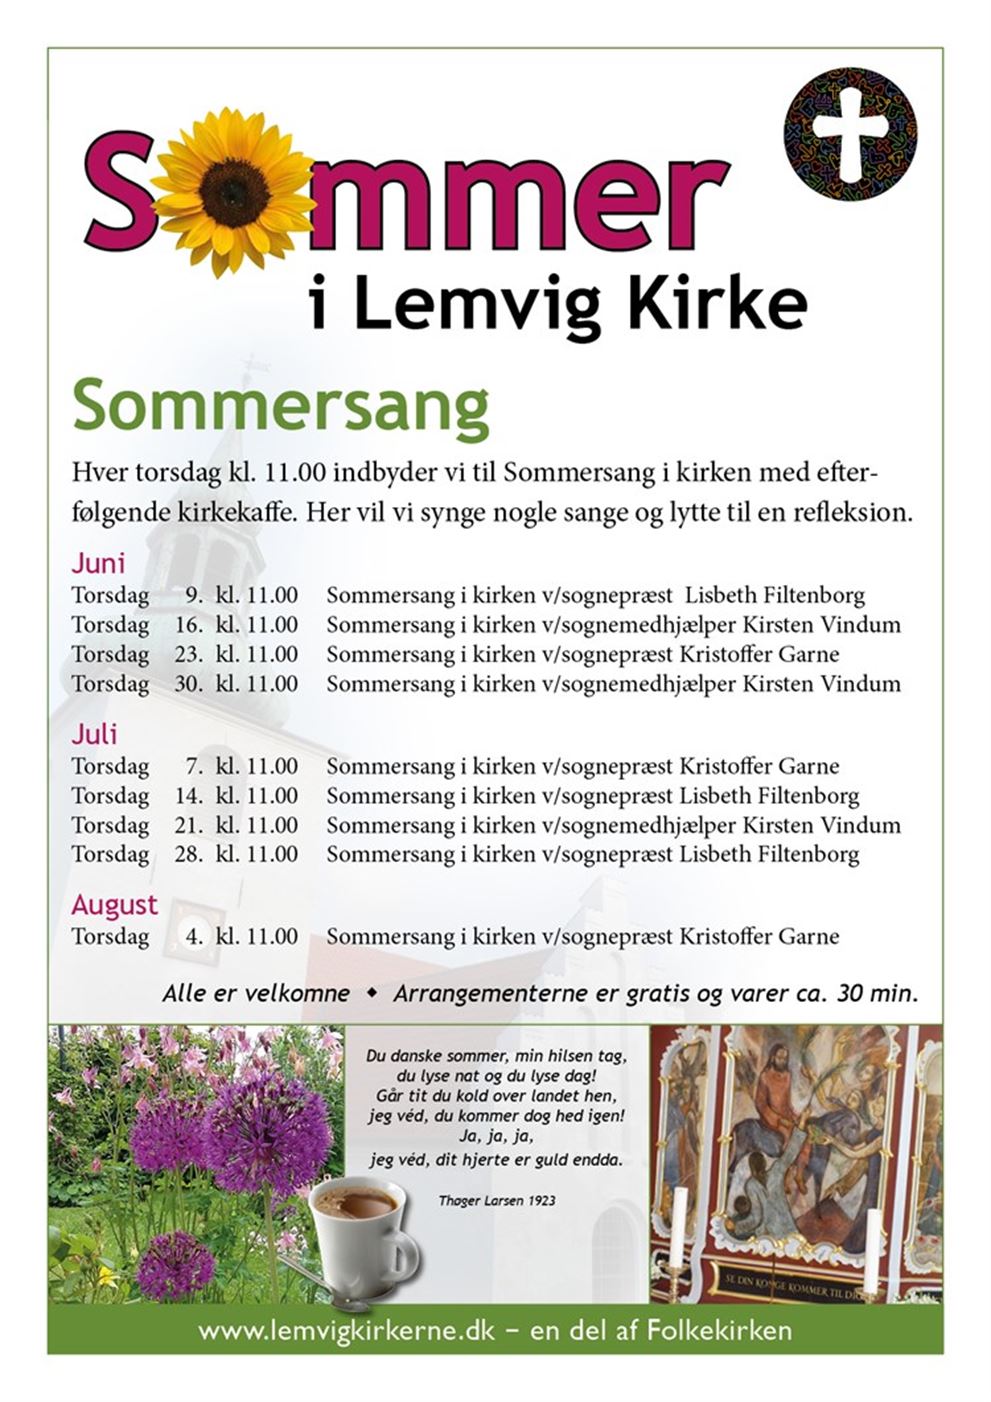 Sommersang Lemvig Kirke (28 juli)